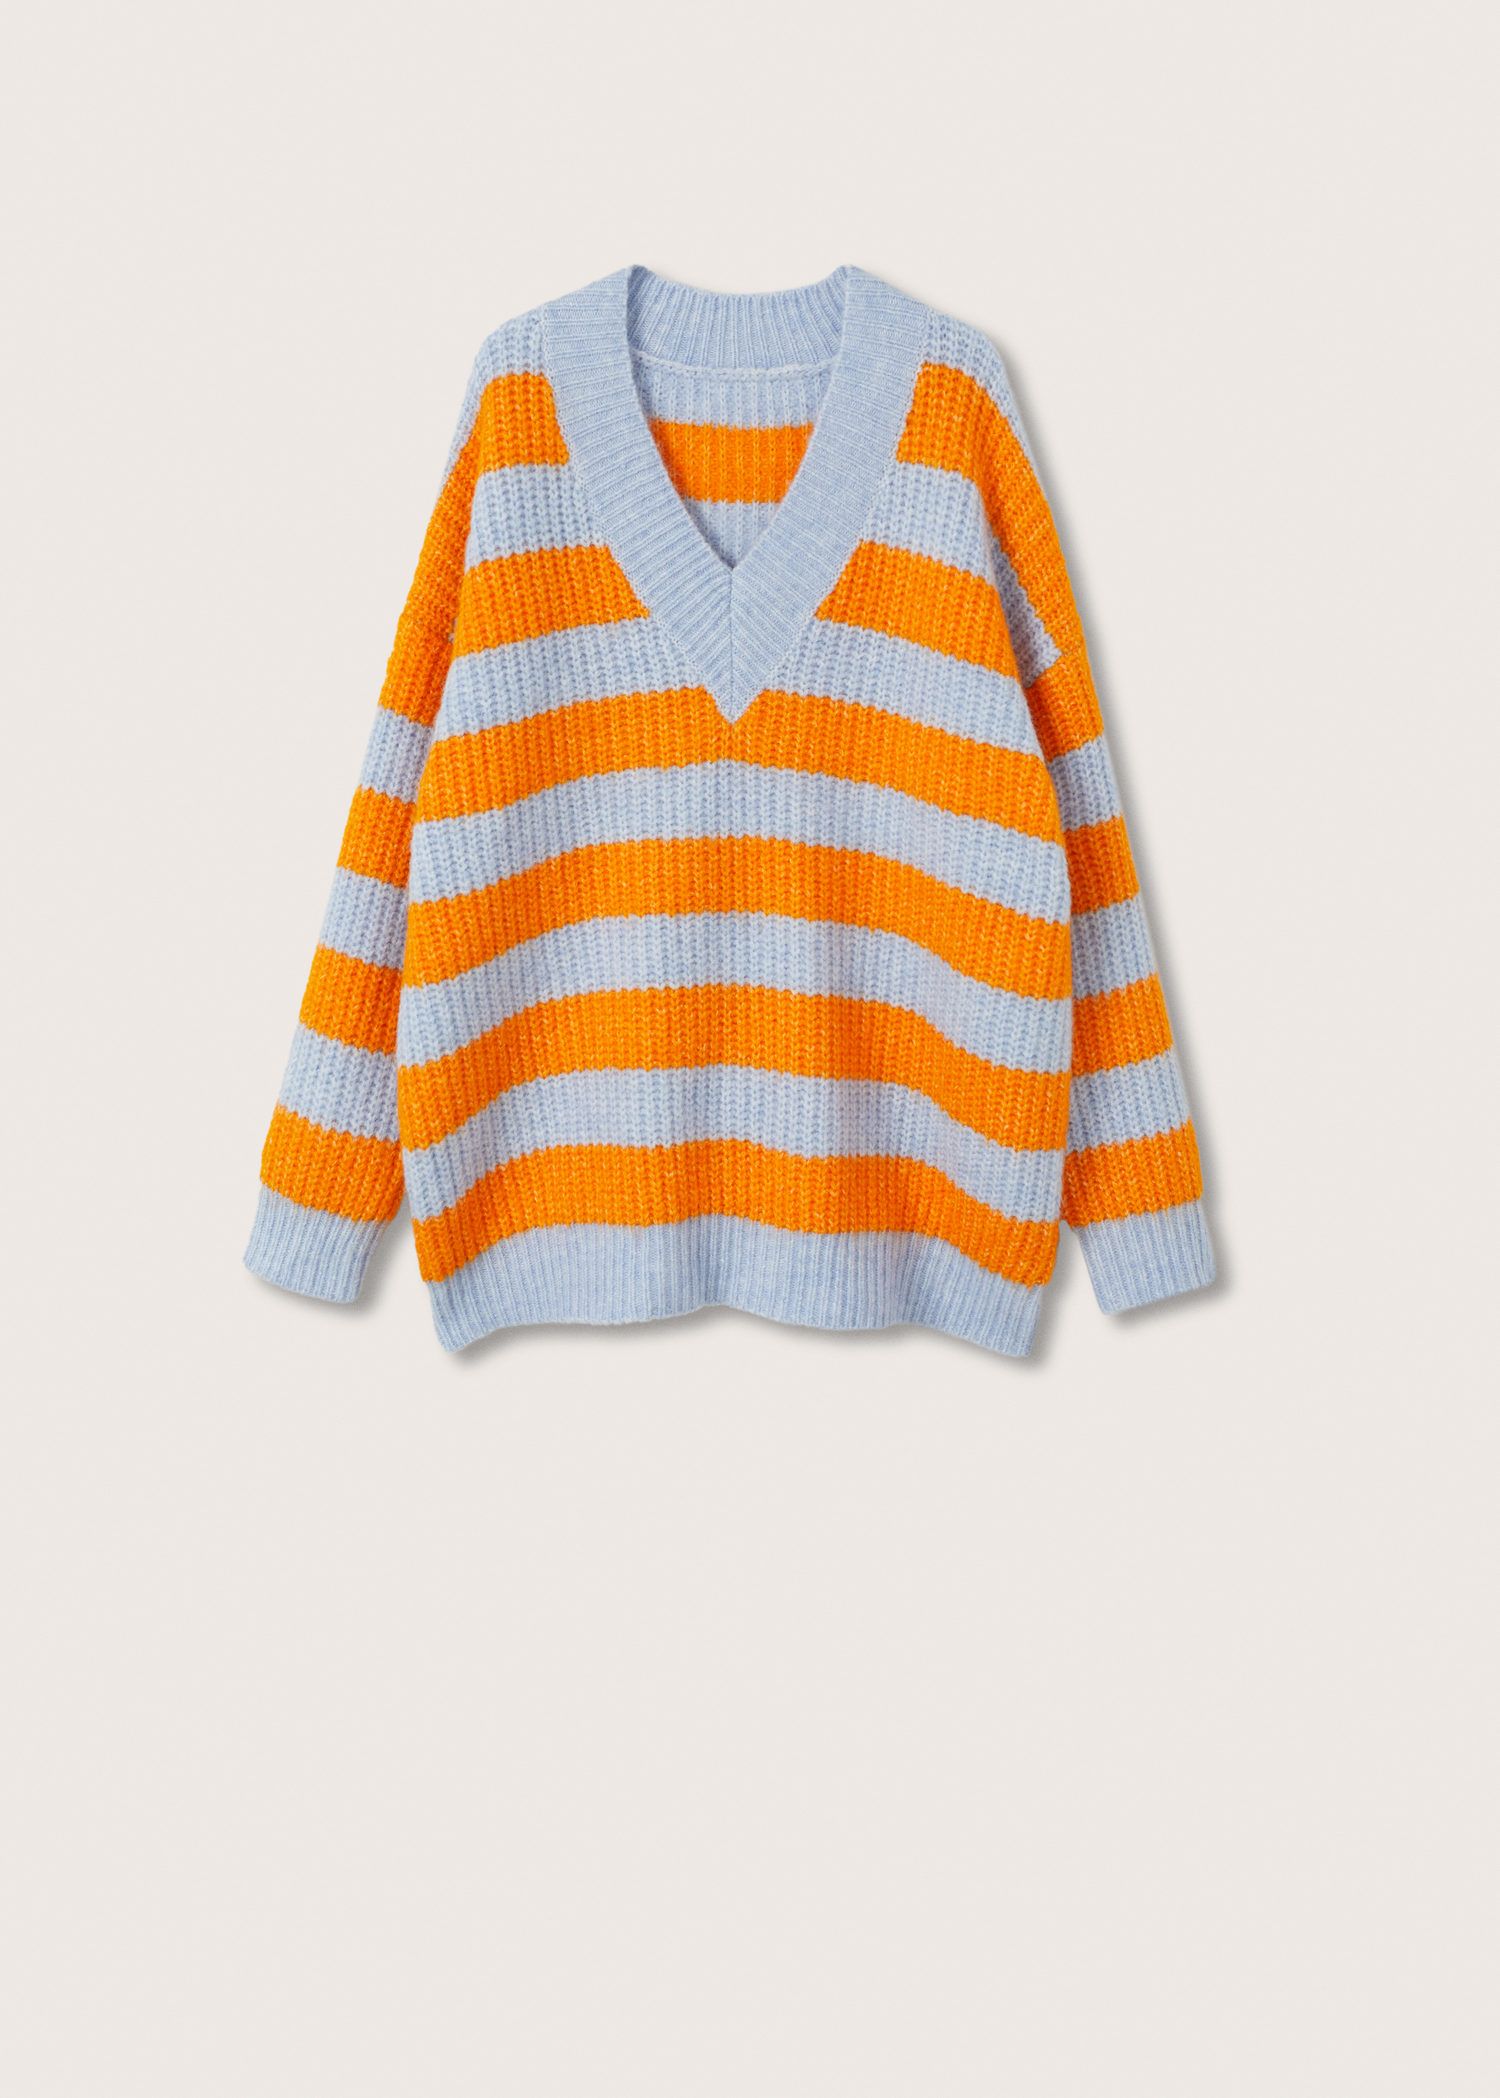 Mango Knit Striped Sweater